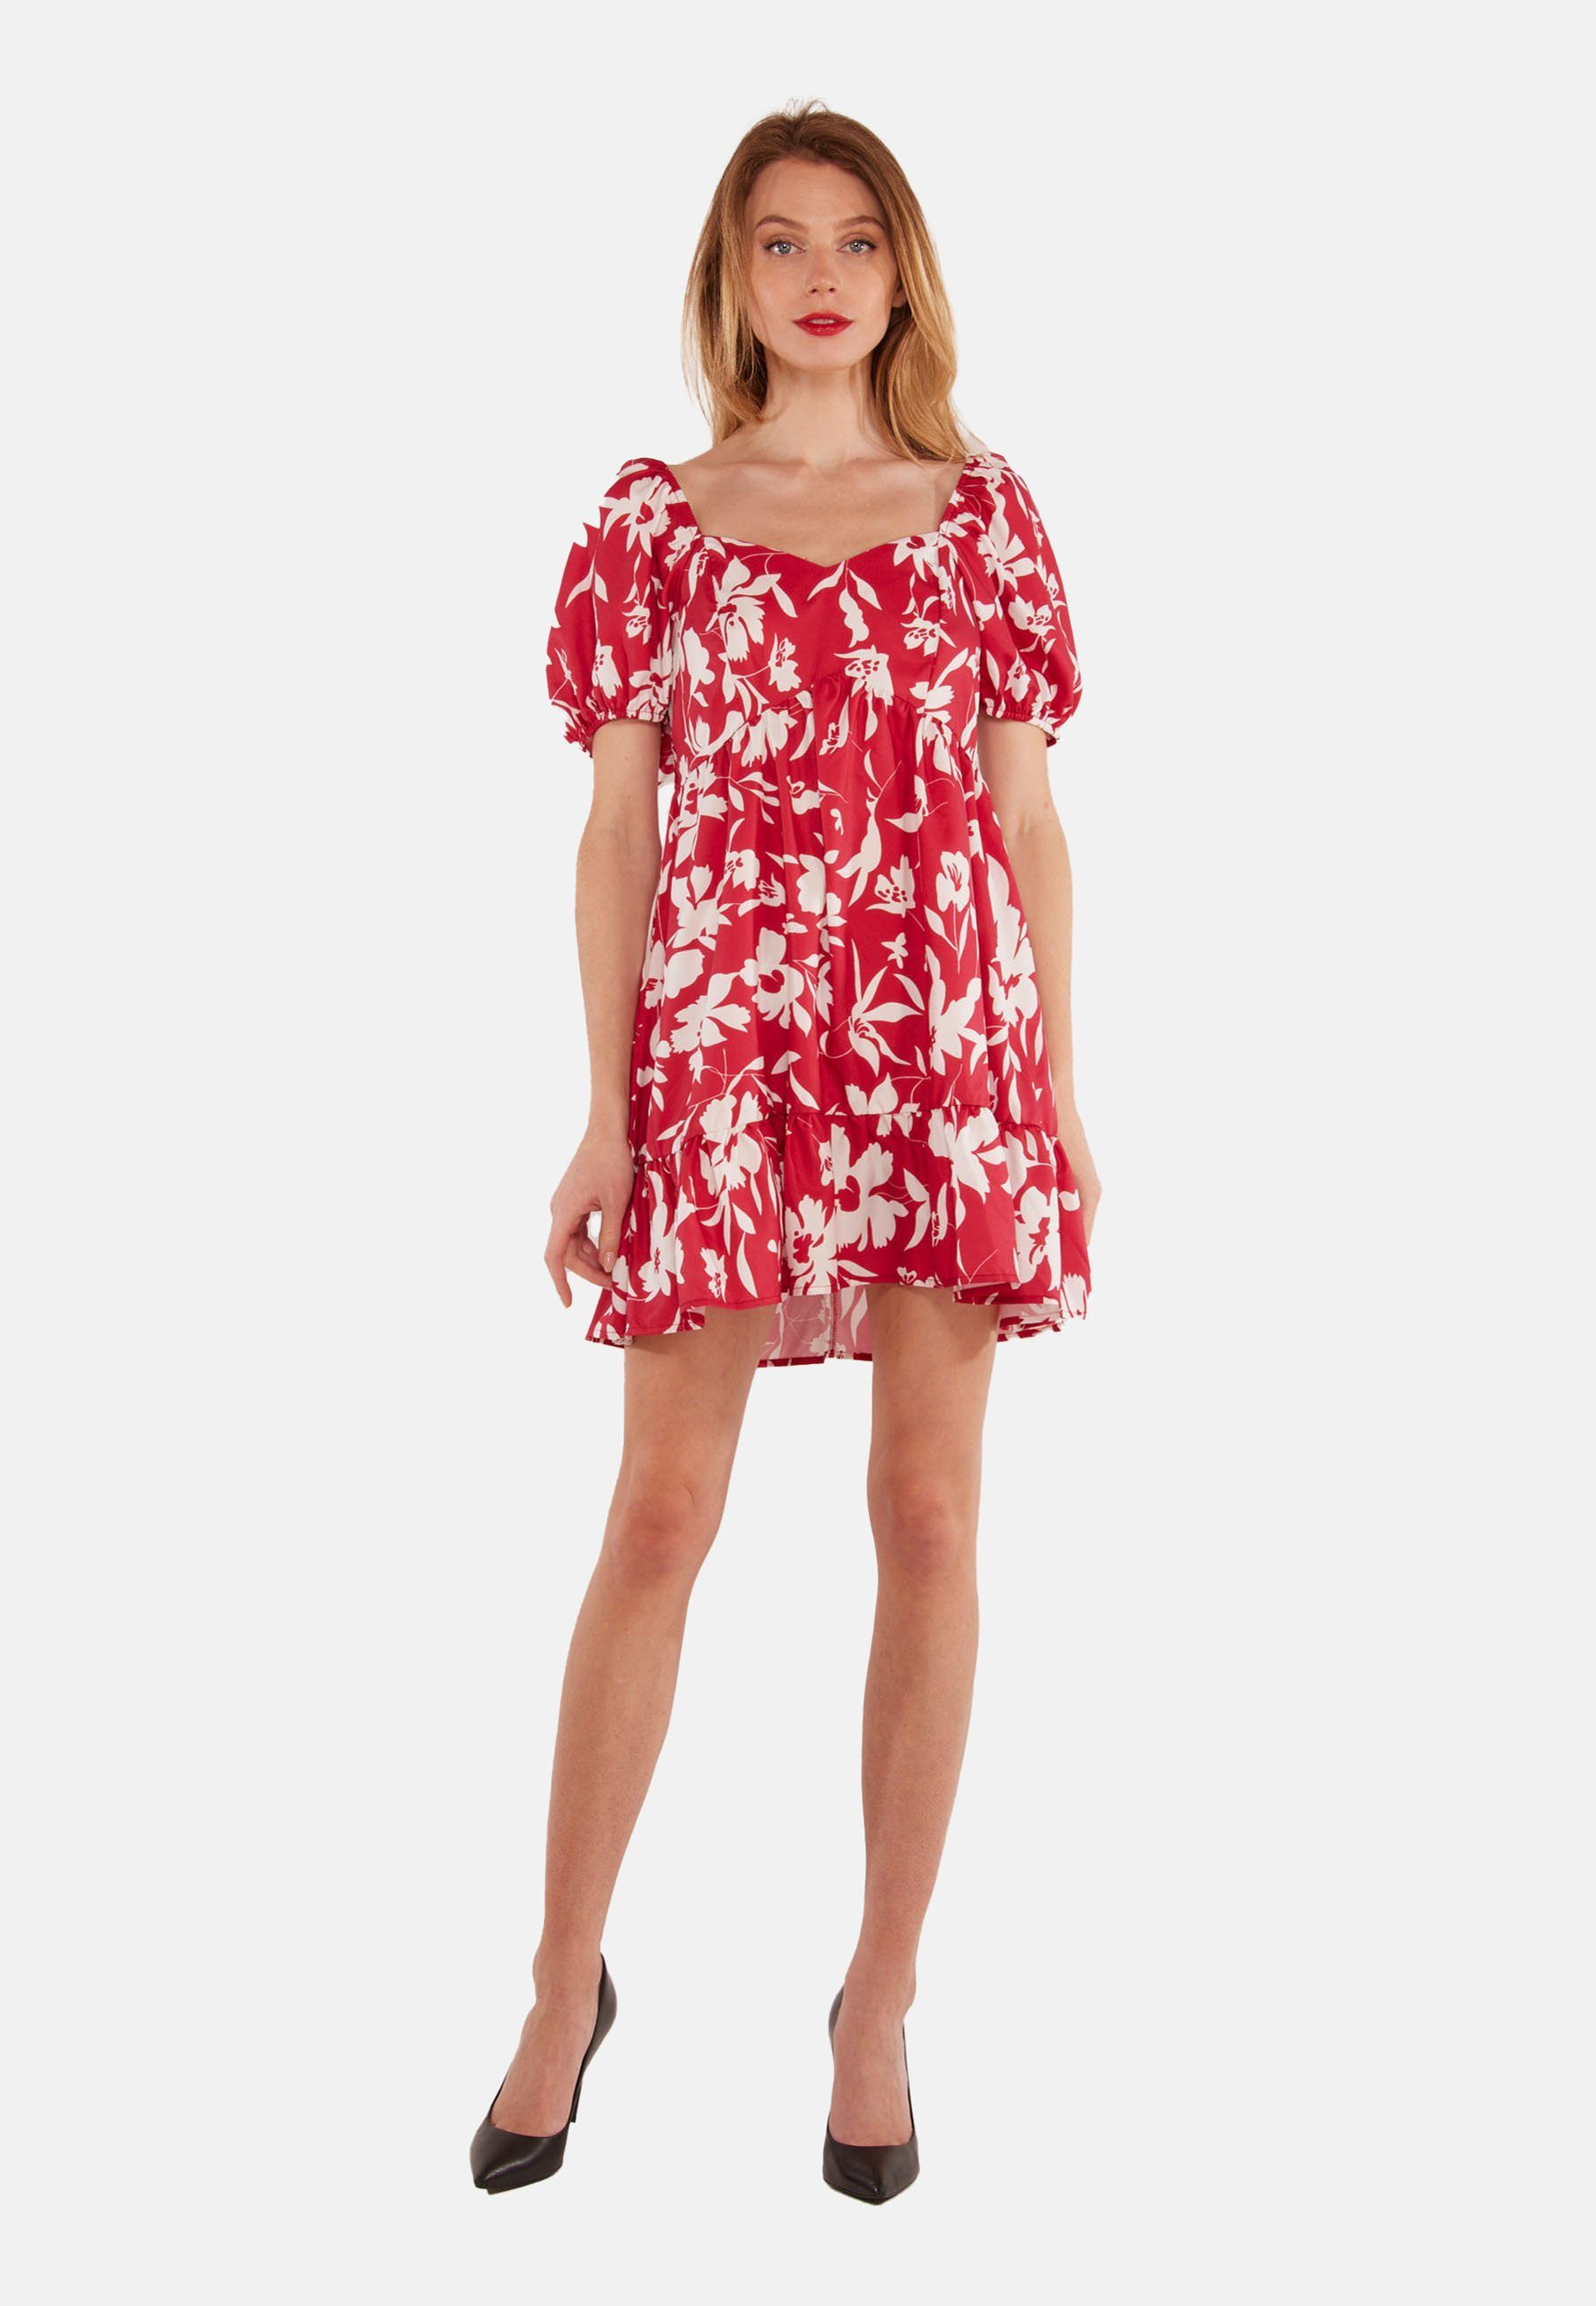 Tooche Minikleid Kleid Rot/weiss Flower atmungsaktiv